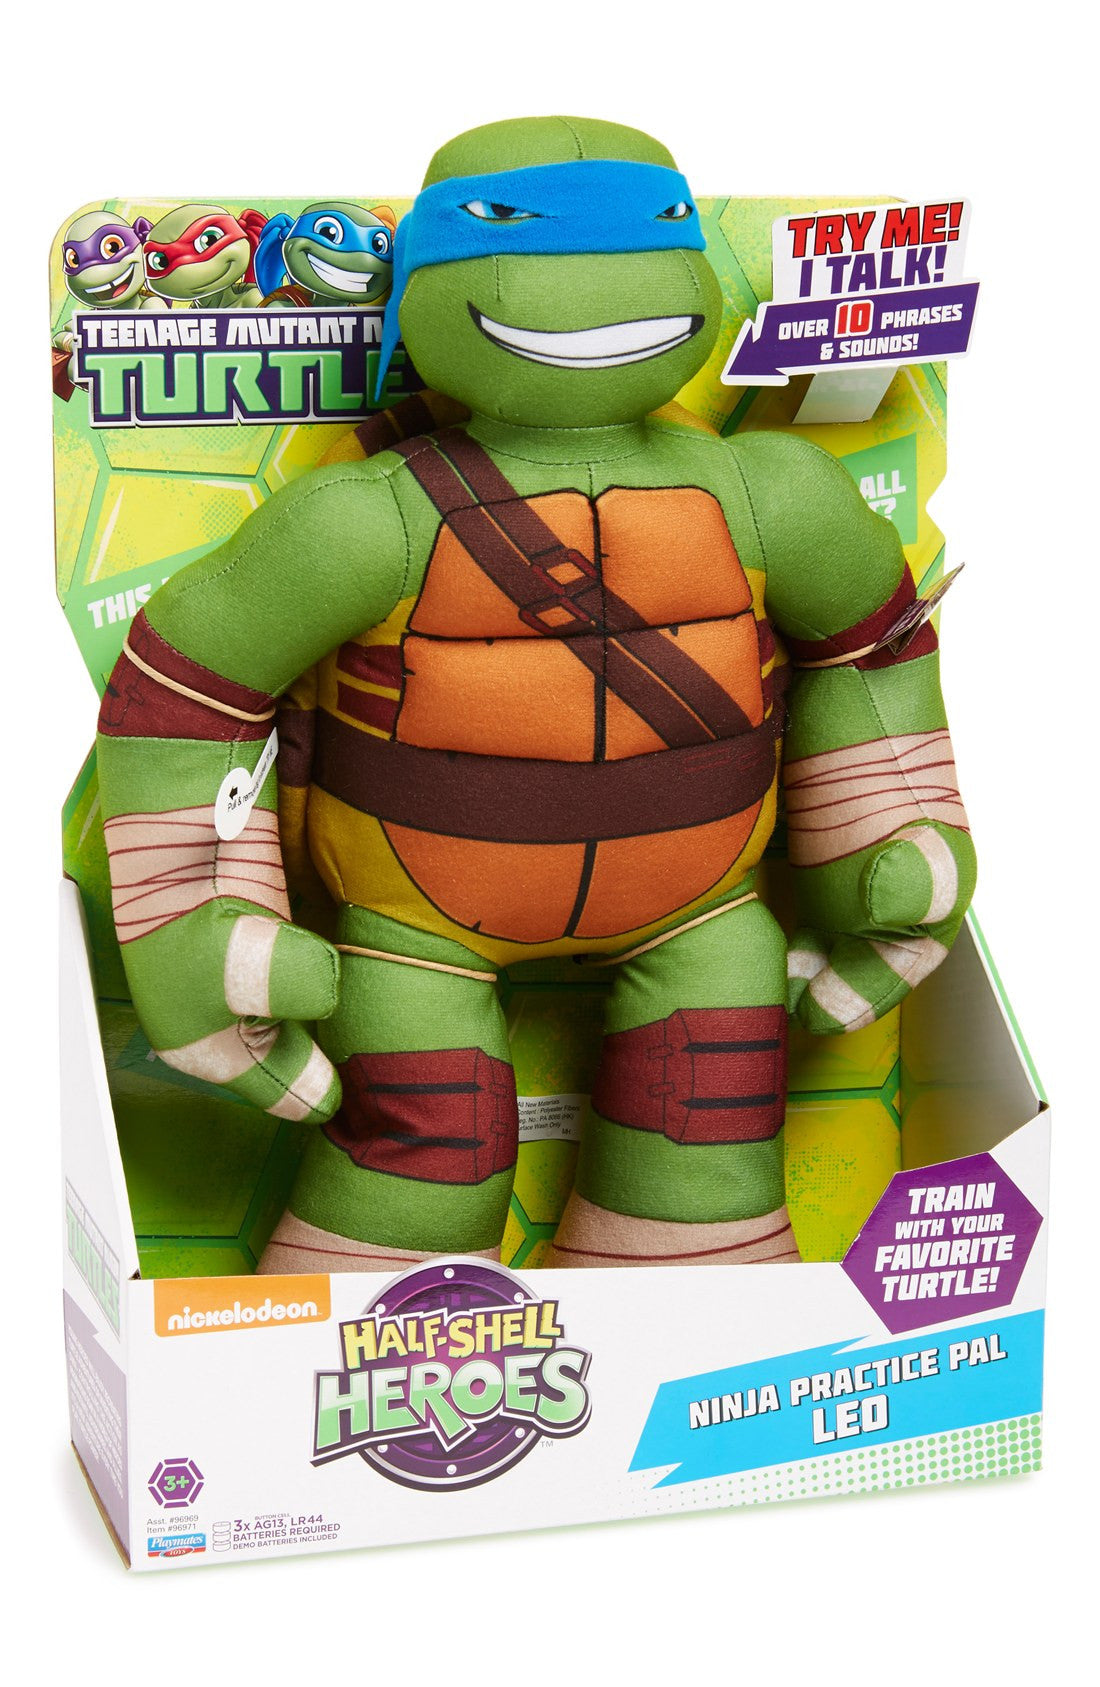 teenage mutant ninja turtles stuffed toys